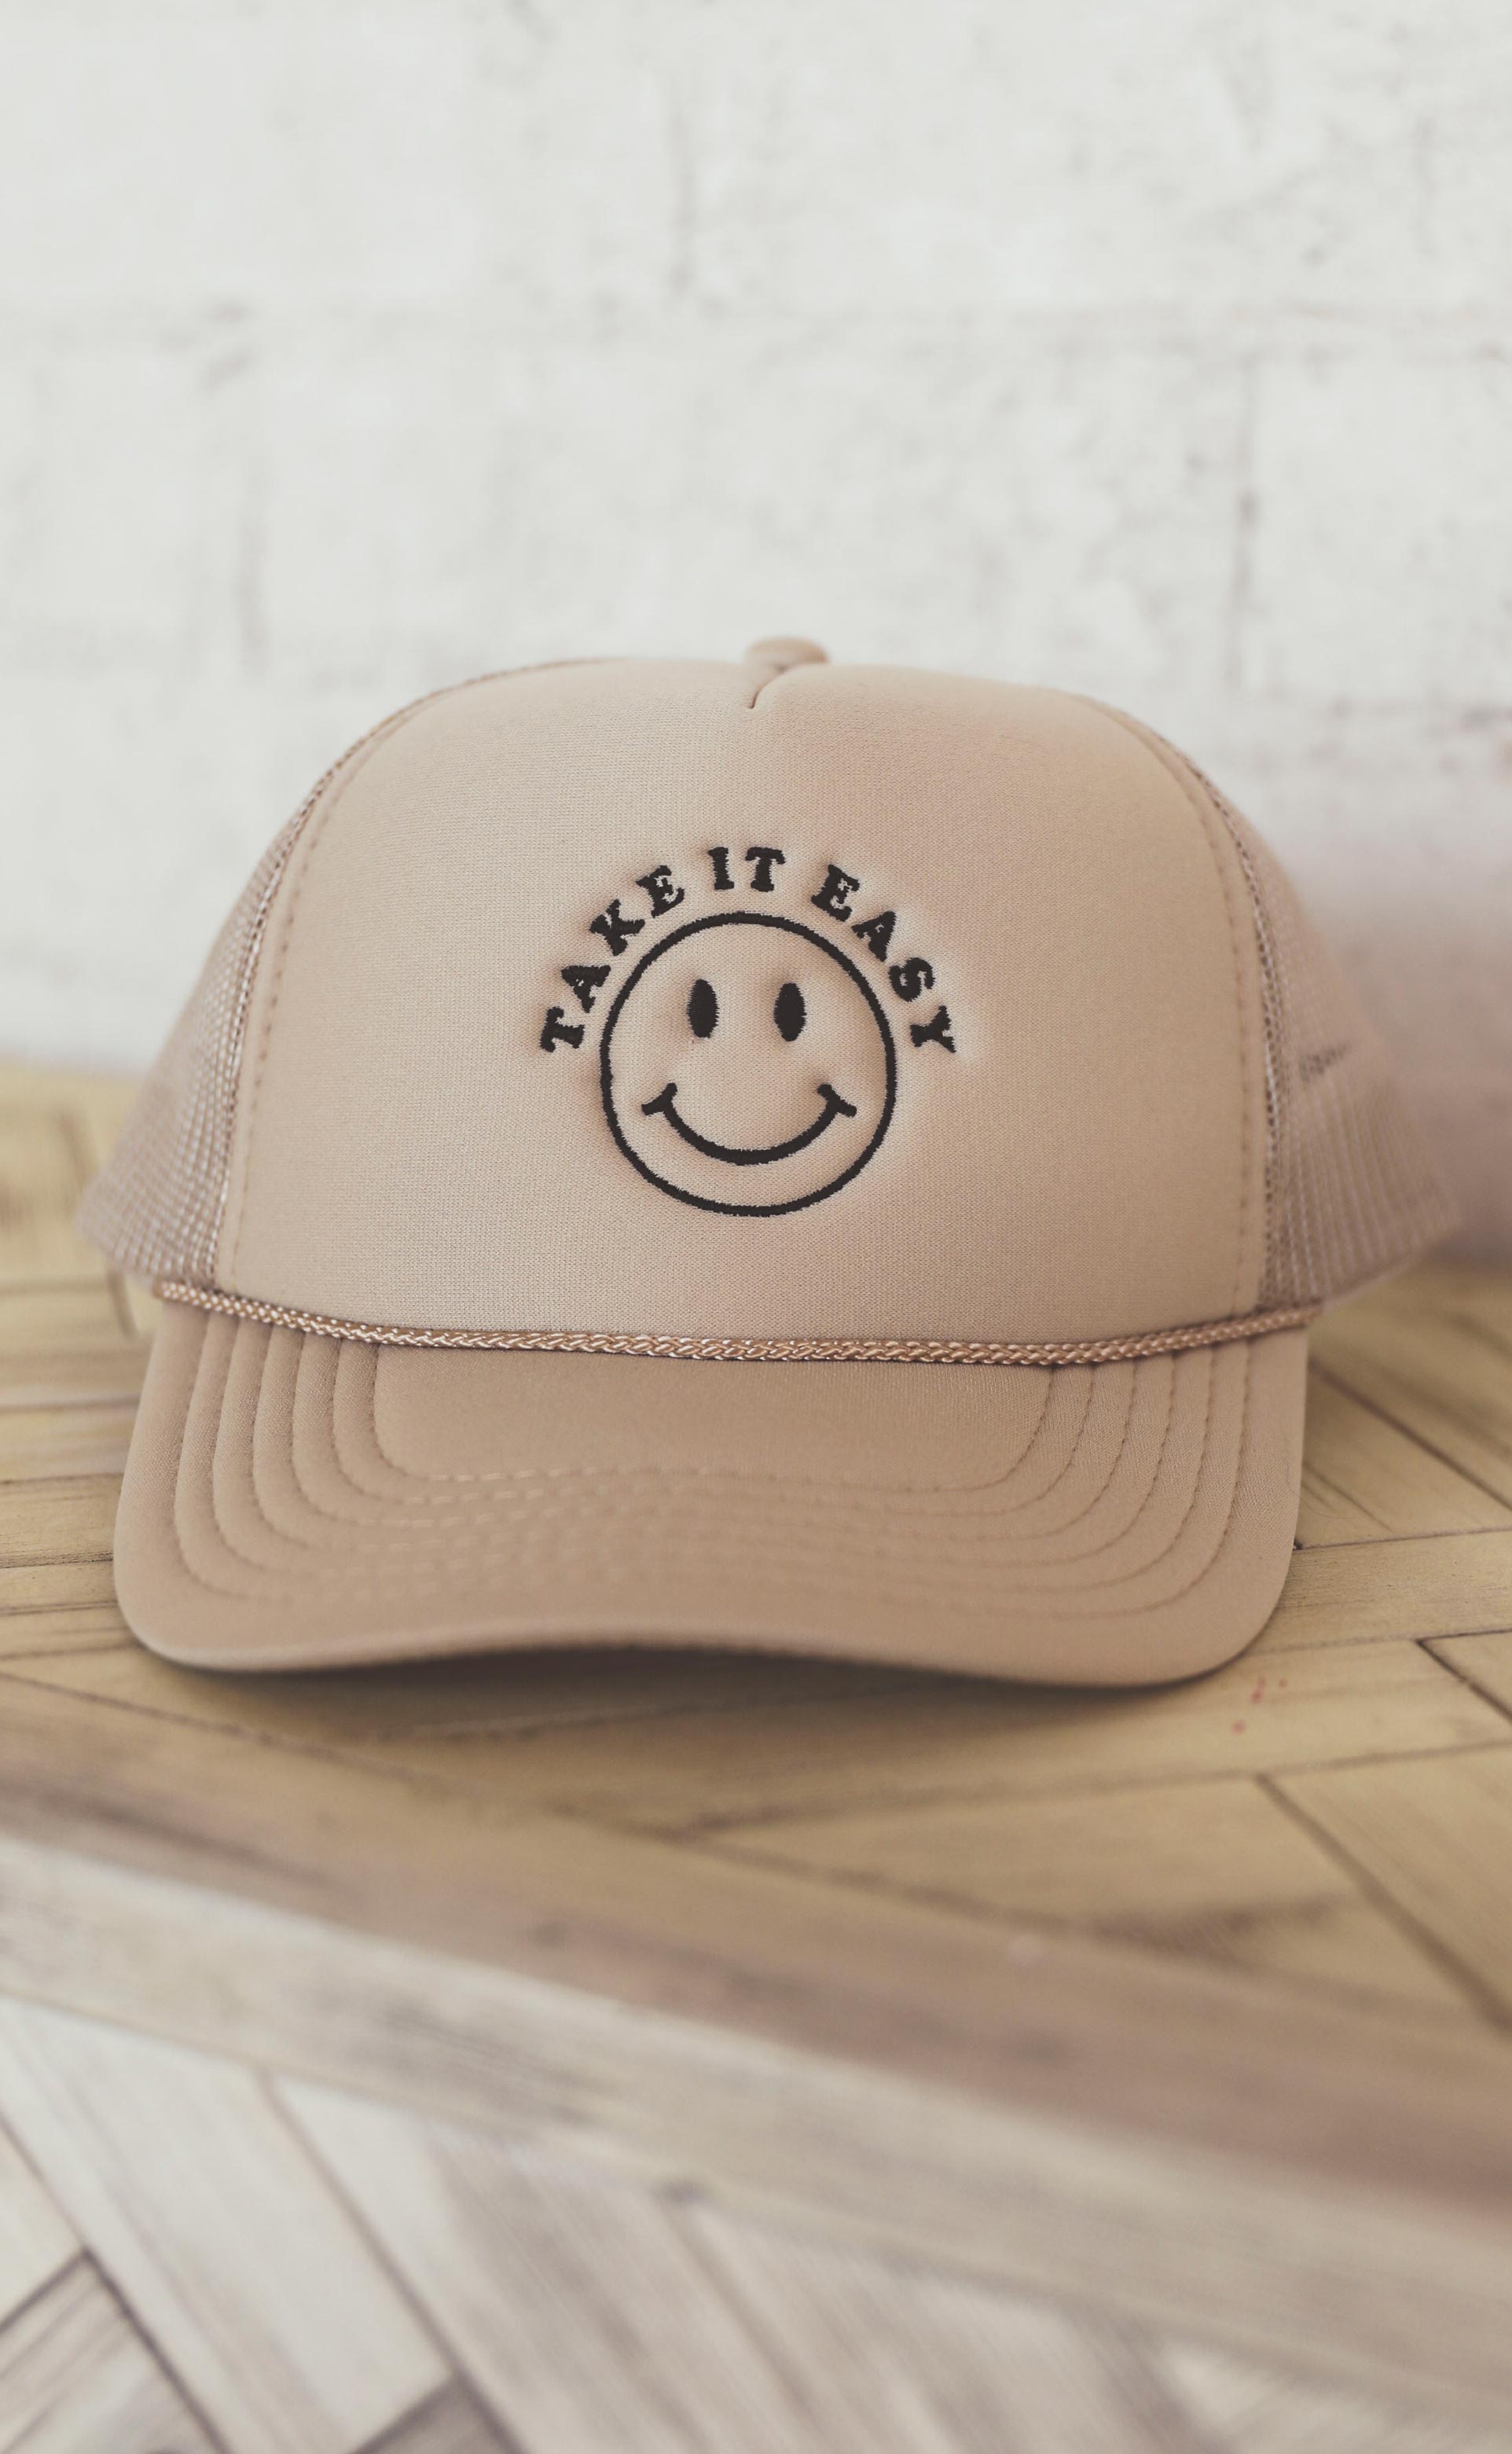 + it take easy Riffraff saturday: friday – trucker hat